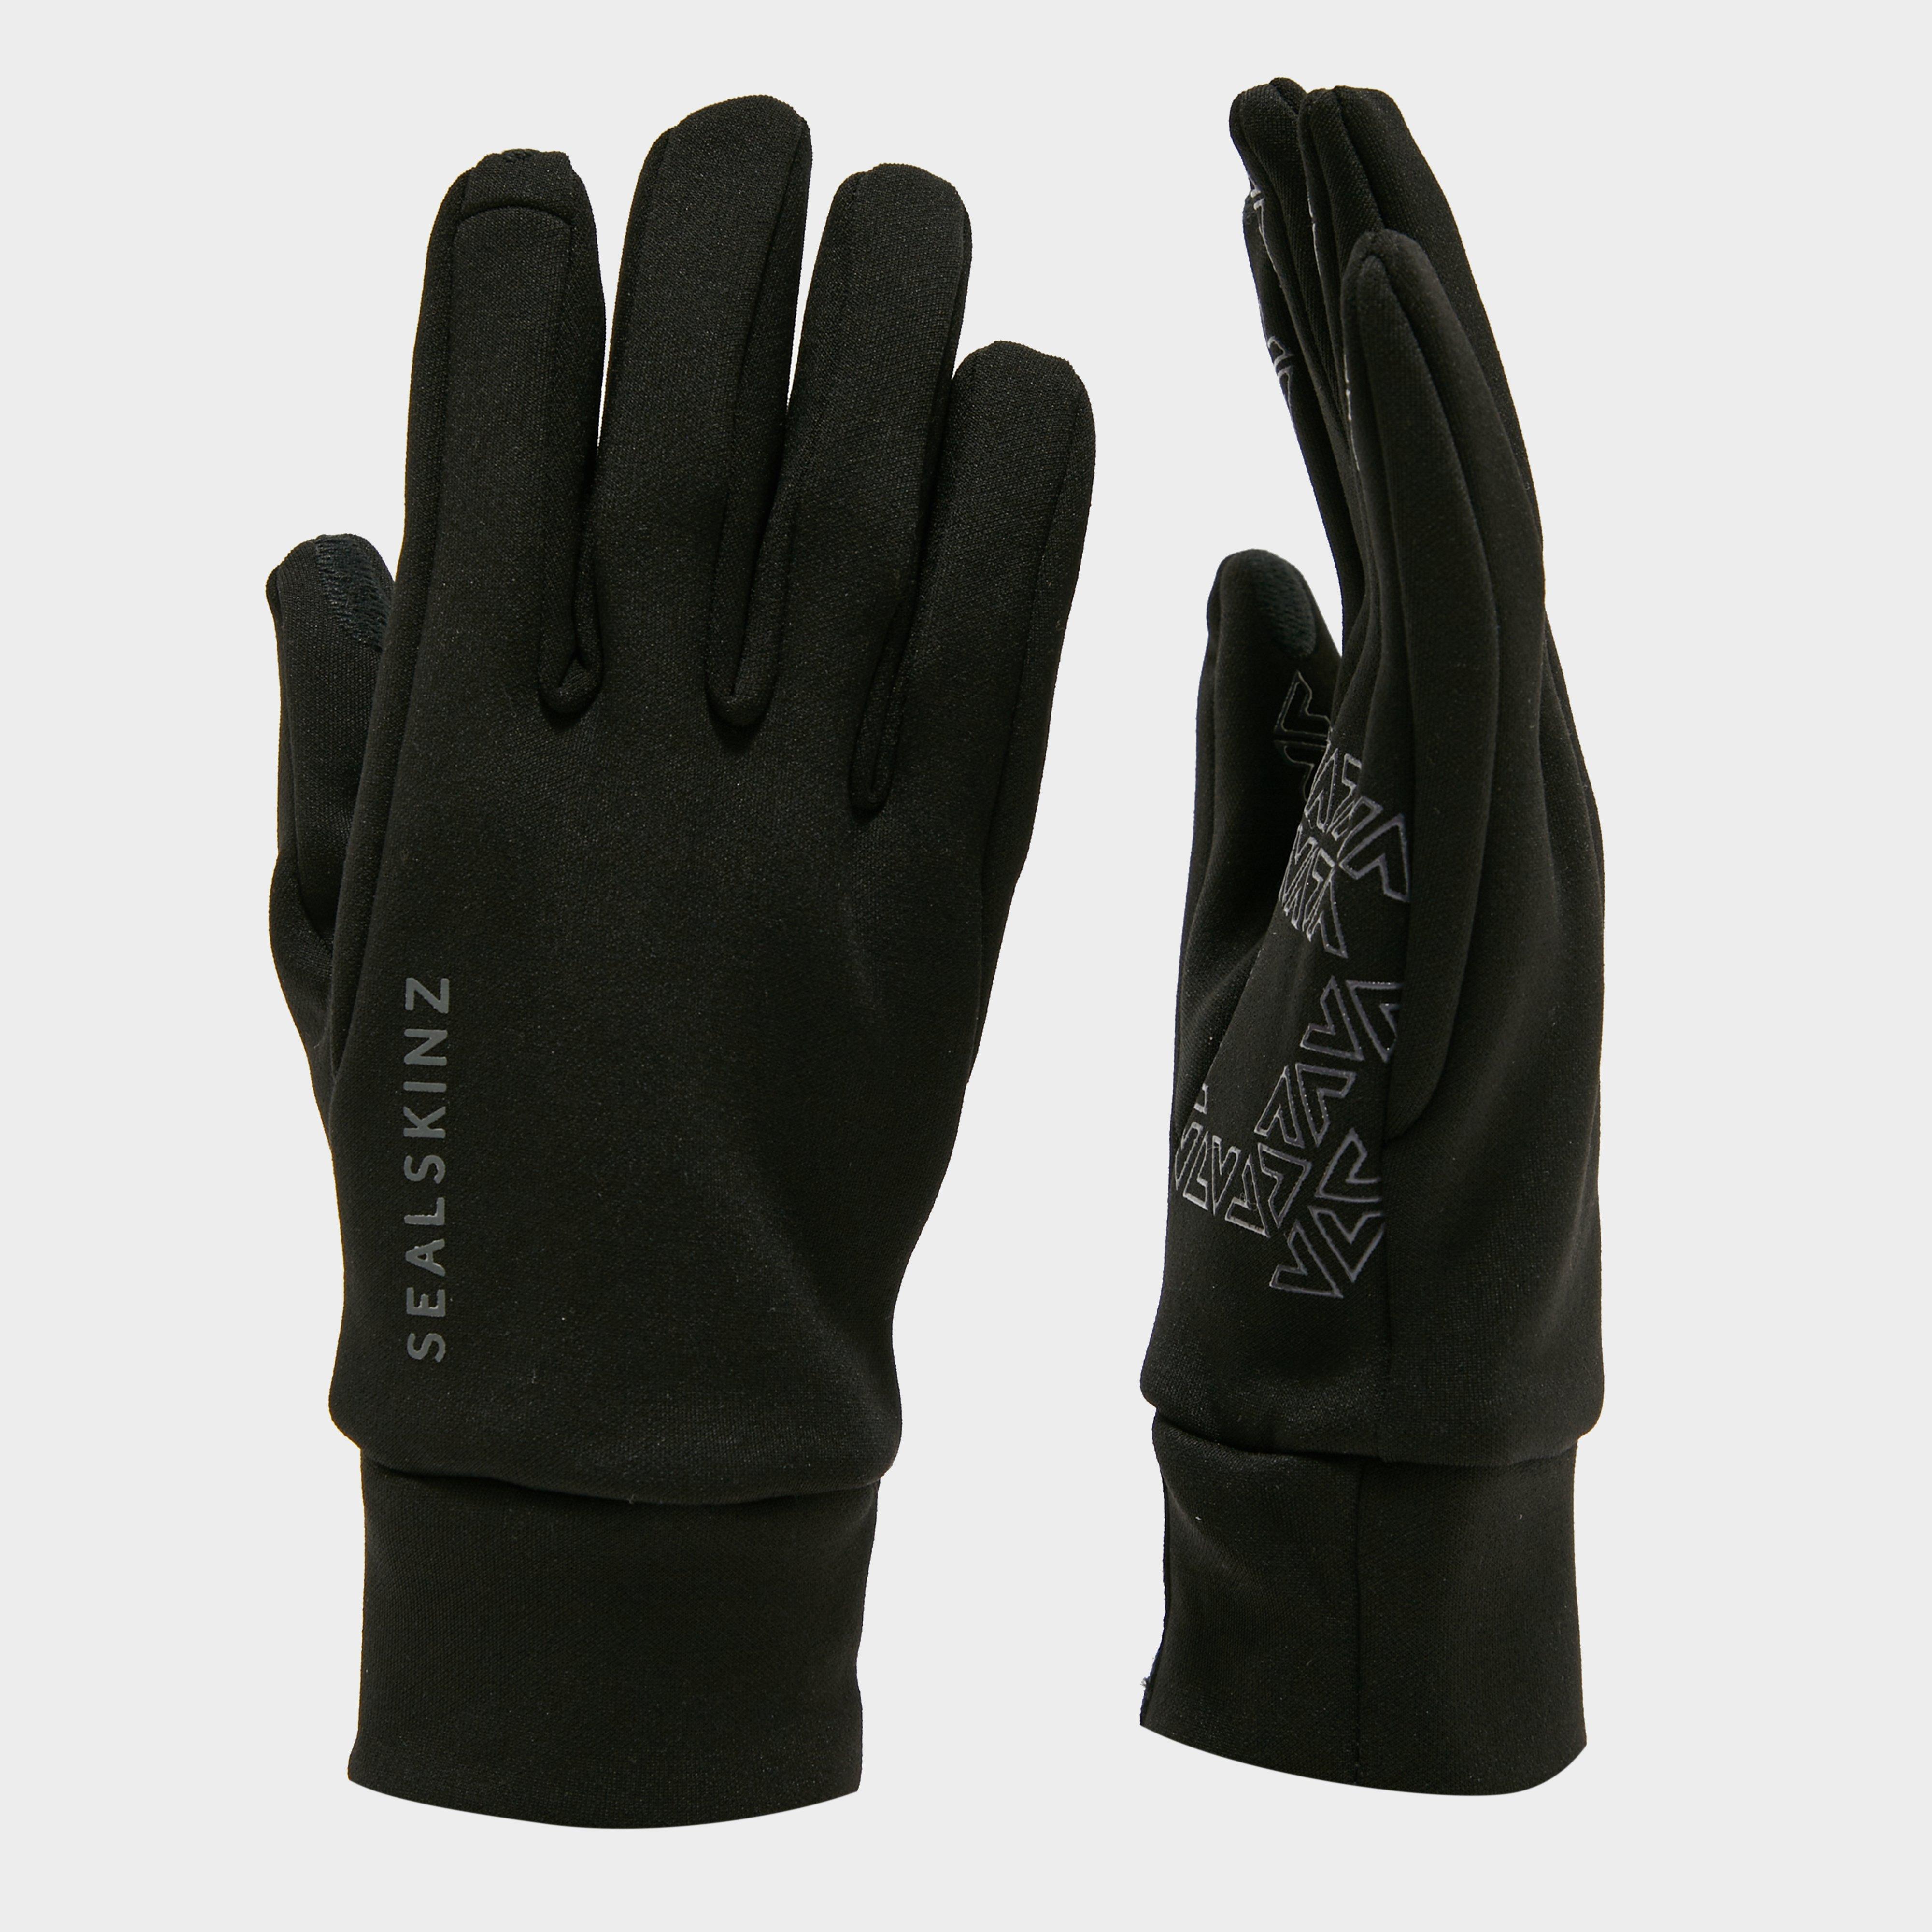 Sealskinz Water Repellent All-weather Gloves - Black/black  Black/black